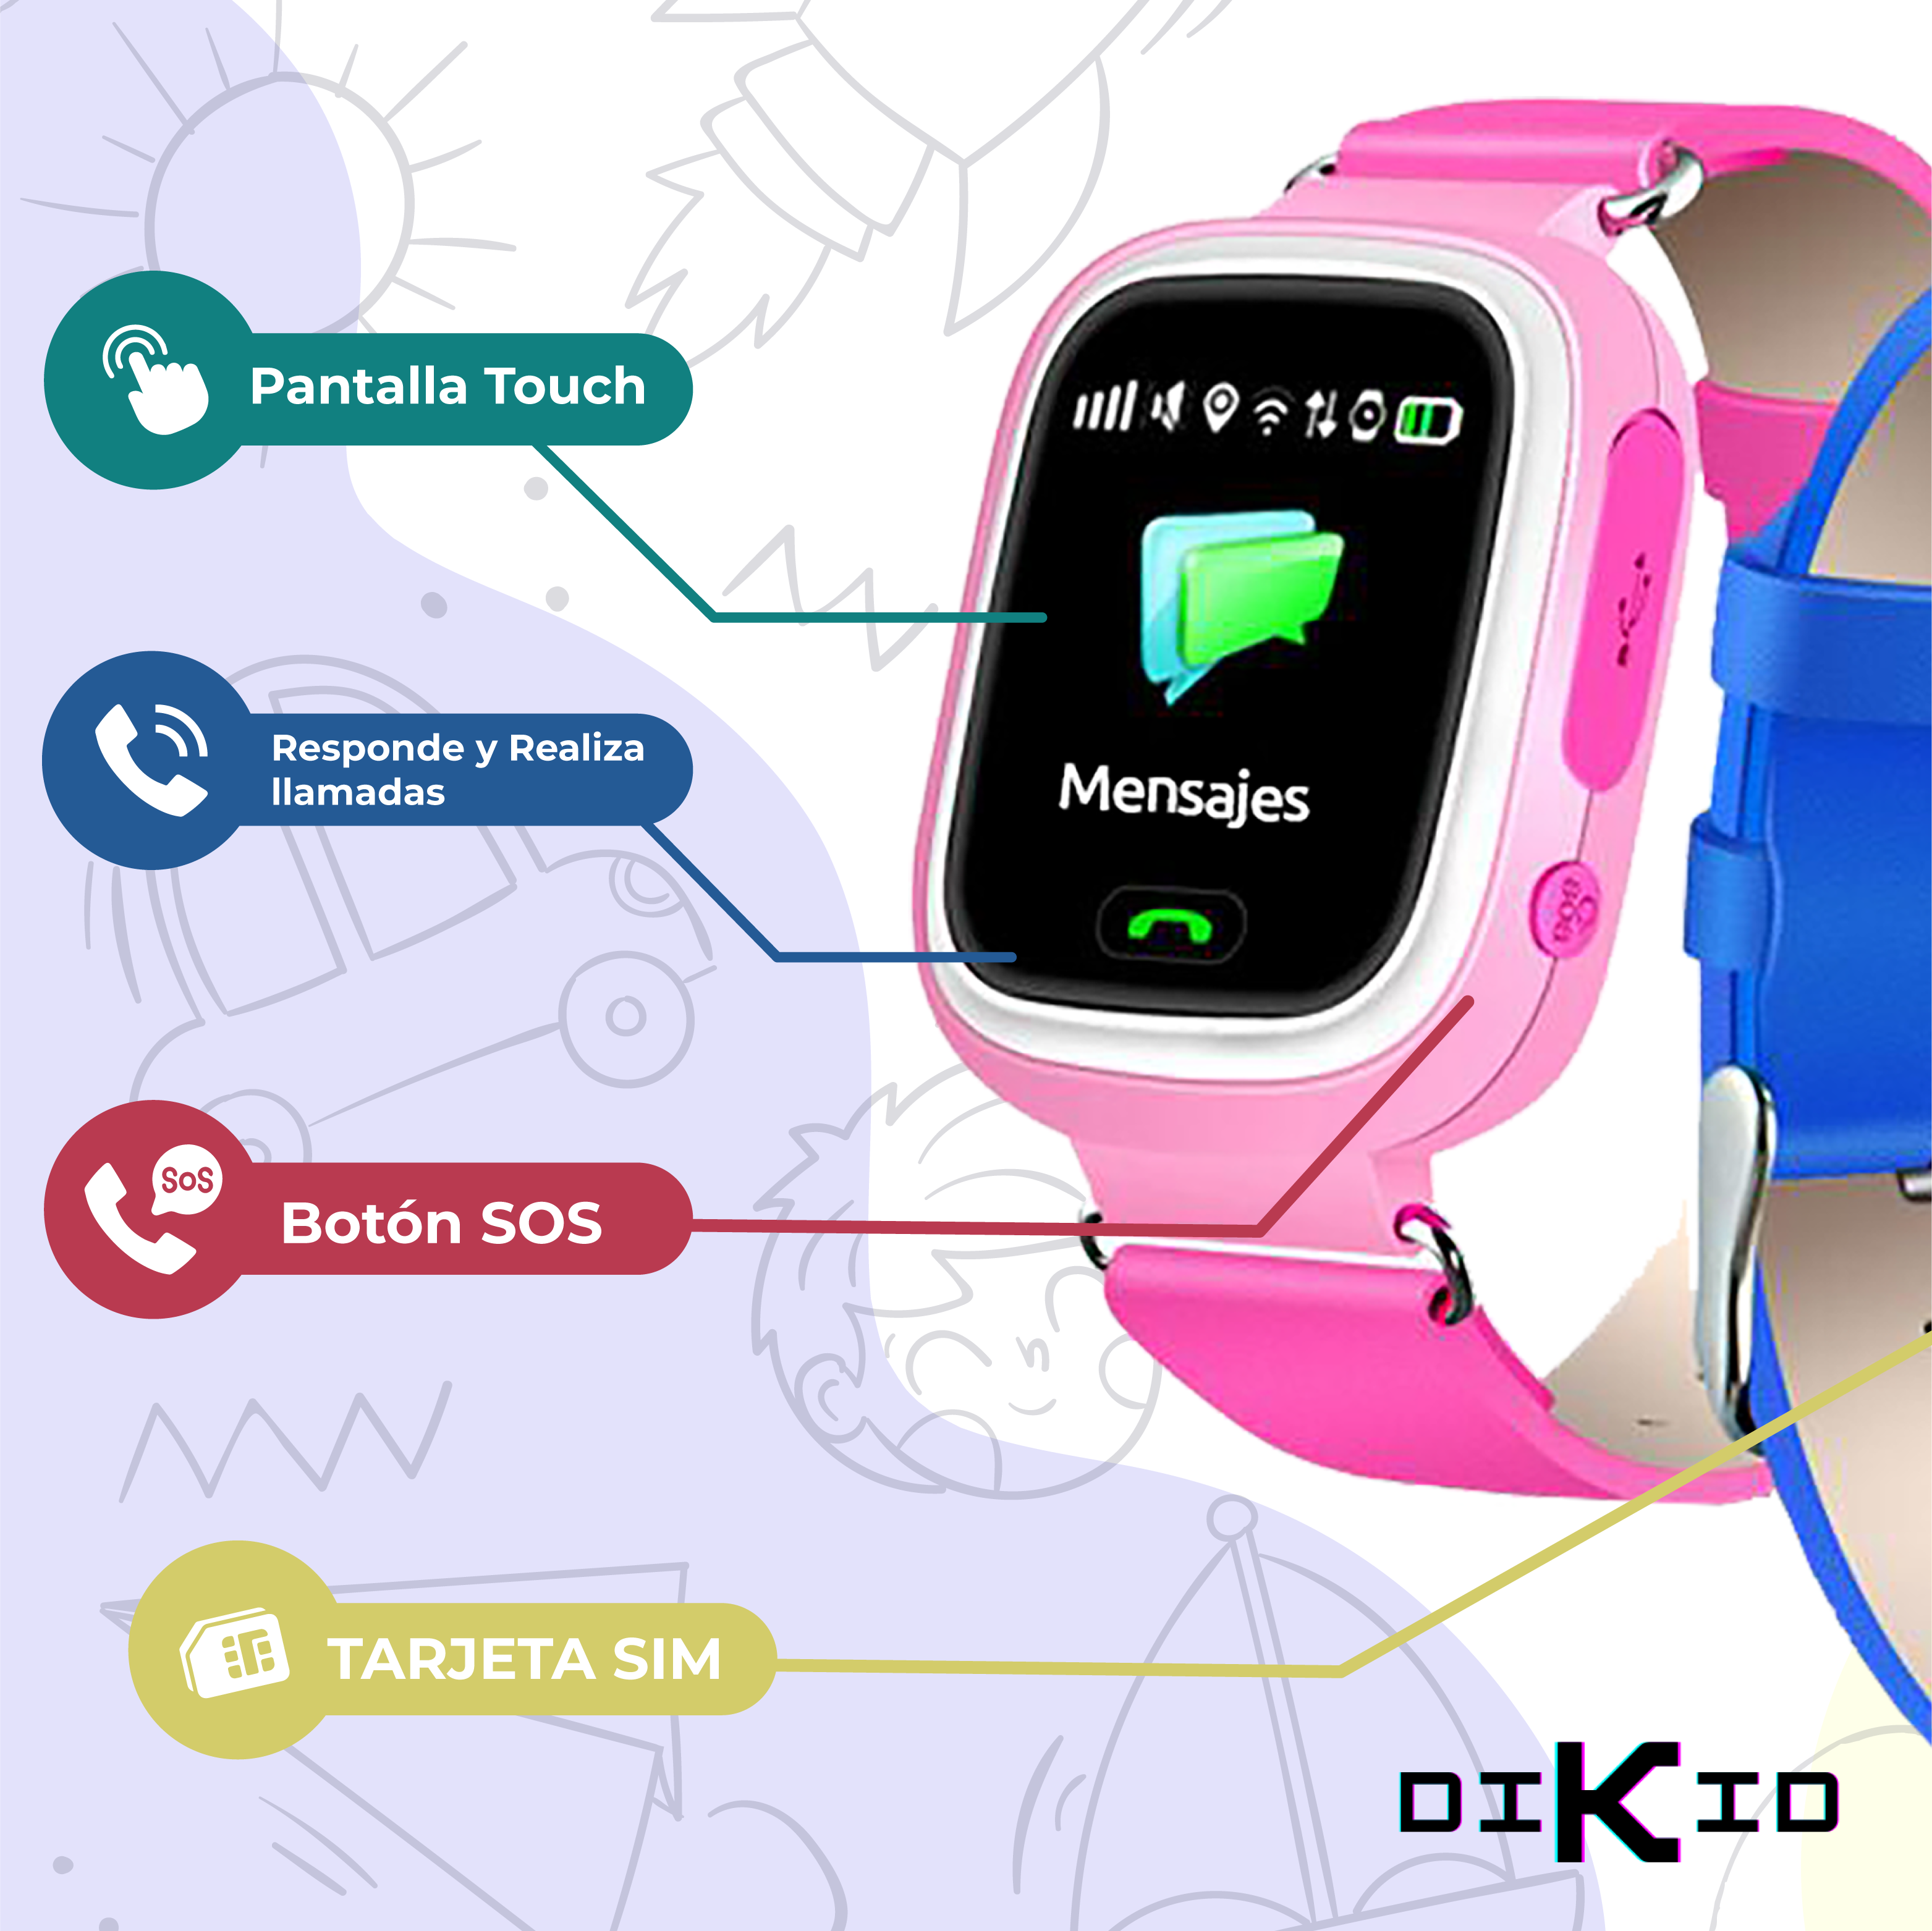  Emojikidz Reloj inteligente para niños con tarjeta SIM, de 4 a  12 años para niños y niñas, localizador de seguimiento GPS, alarma SOS,  monitoreo remoto, 2 vías, llamada cara a cara